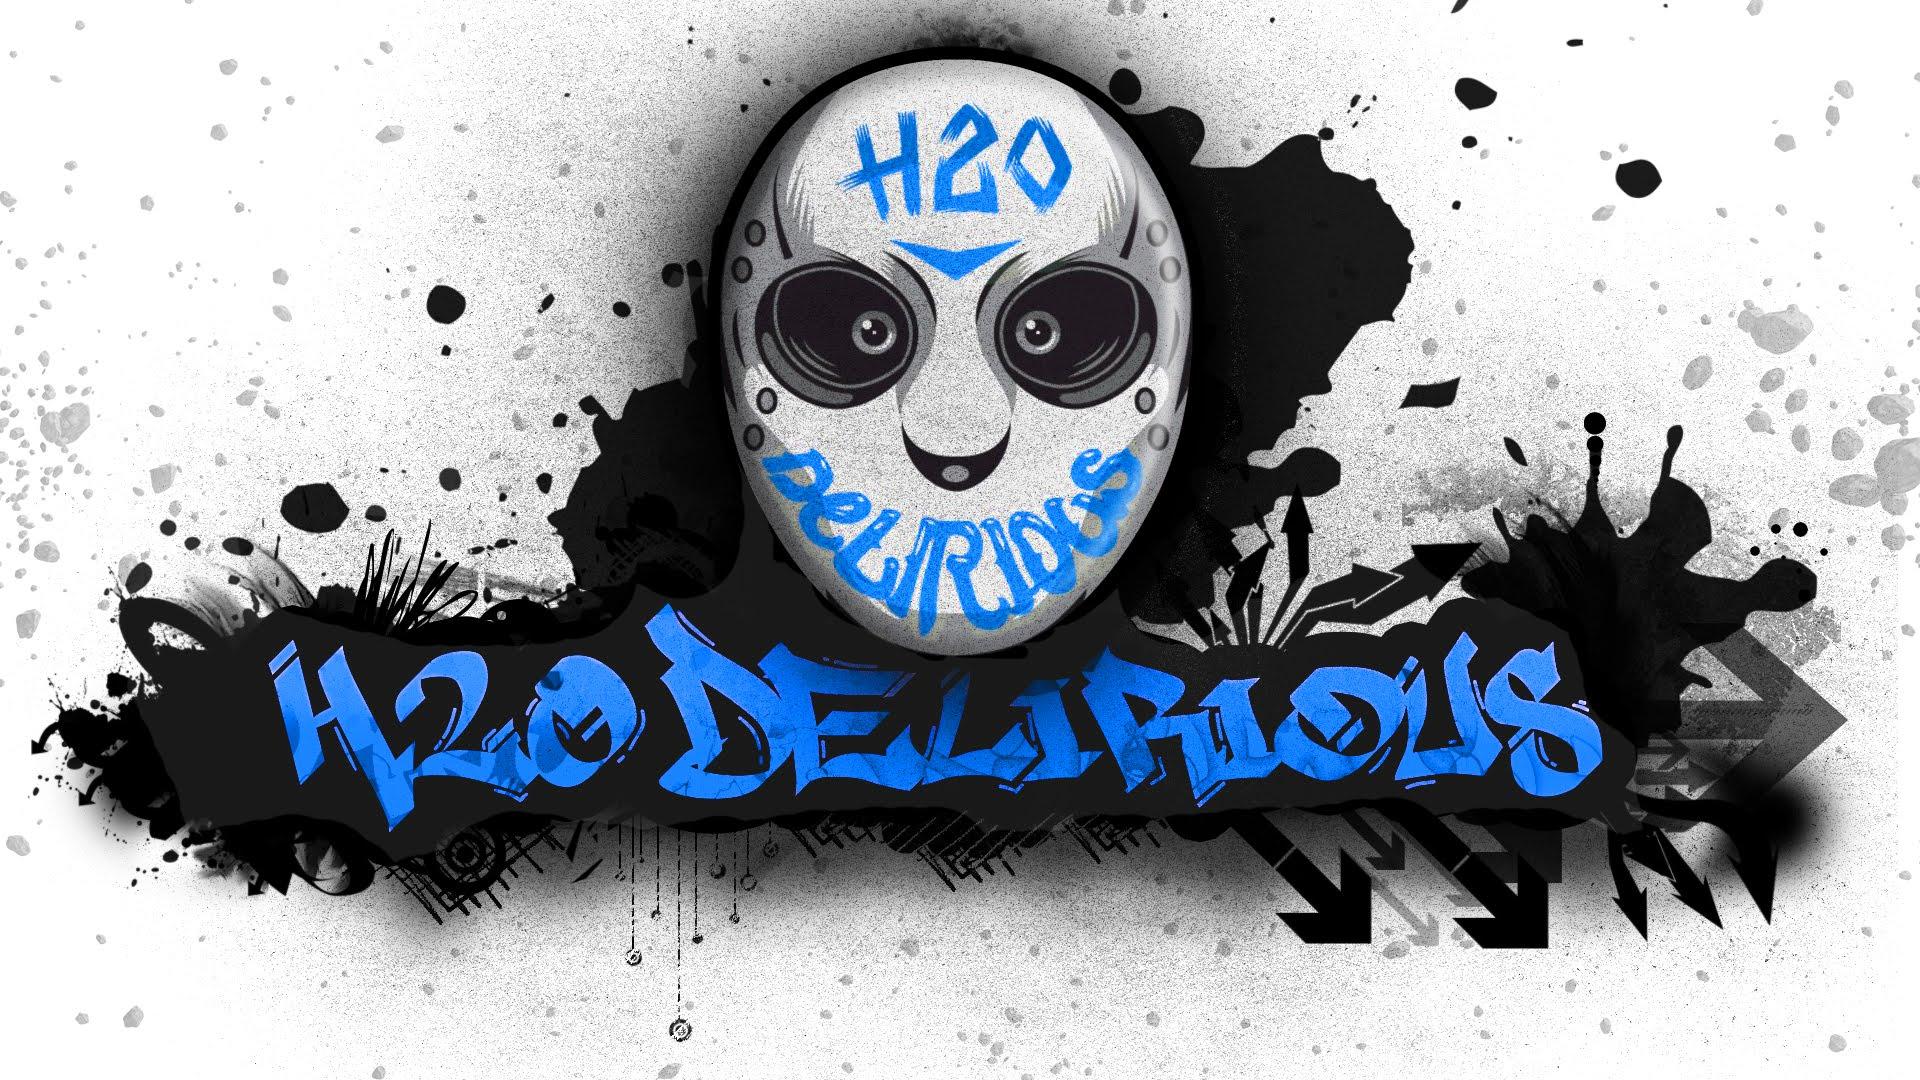 H20 Delirious Blue 1920x1080